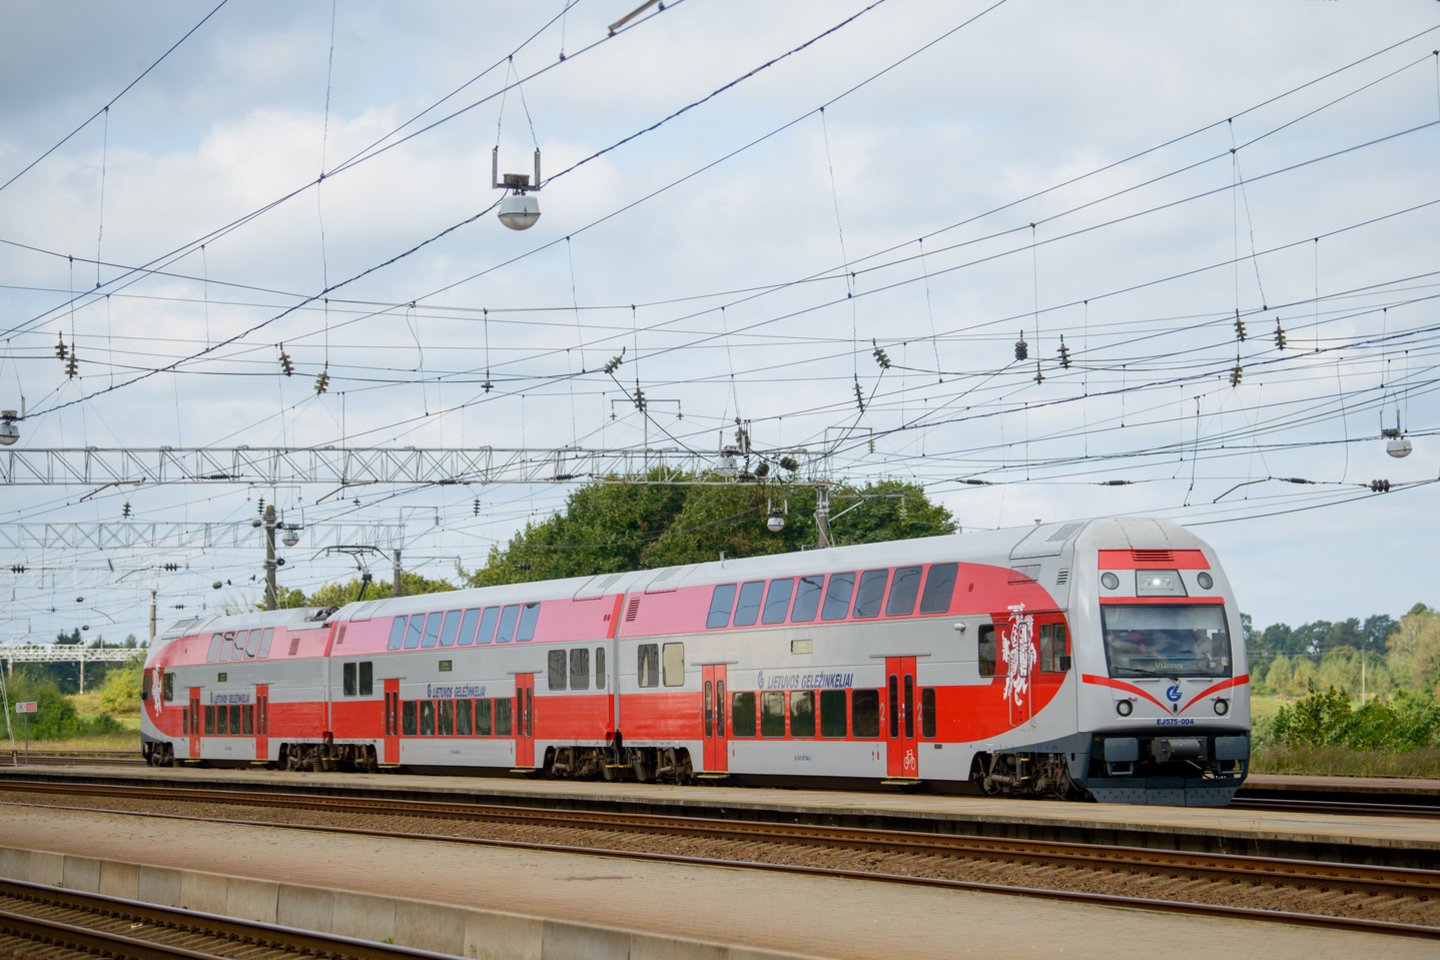 Antradienį startavo iniciatyva dėl Europos sostinių sujungimo greitaisiais traukiniais.<br>J.Stacevičiaus nuotr.